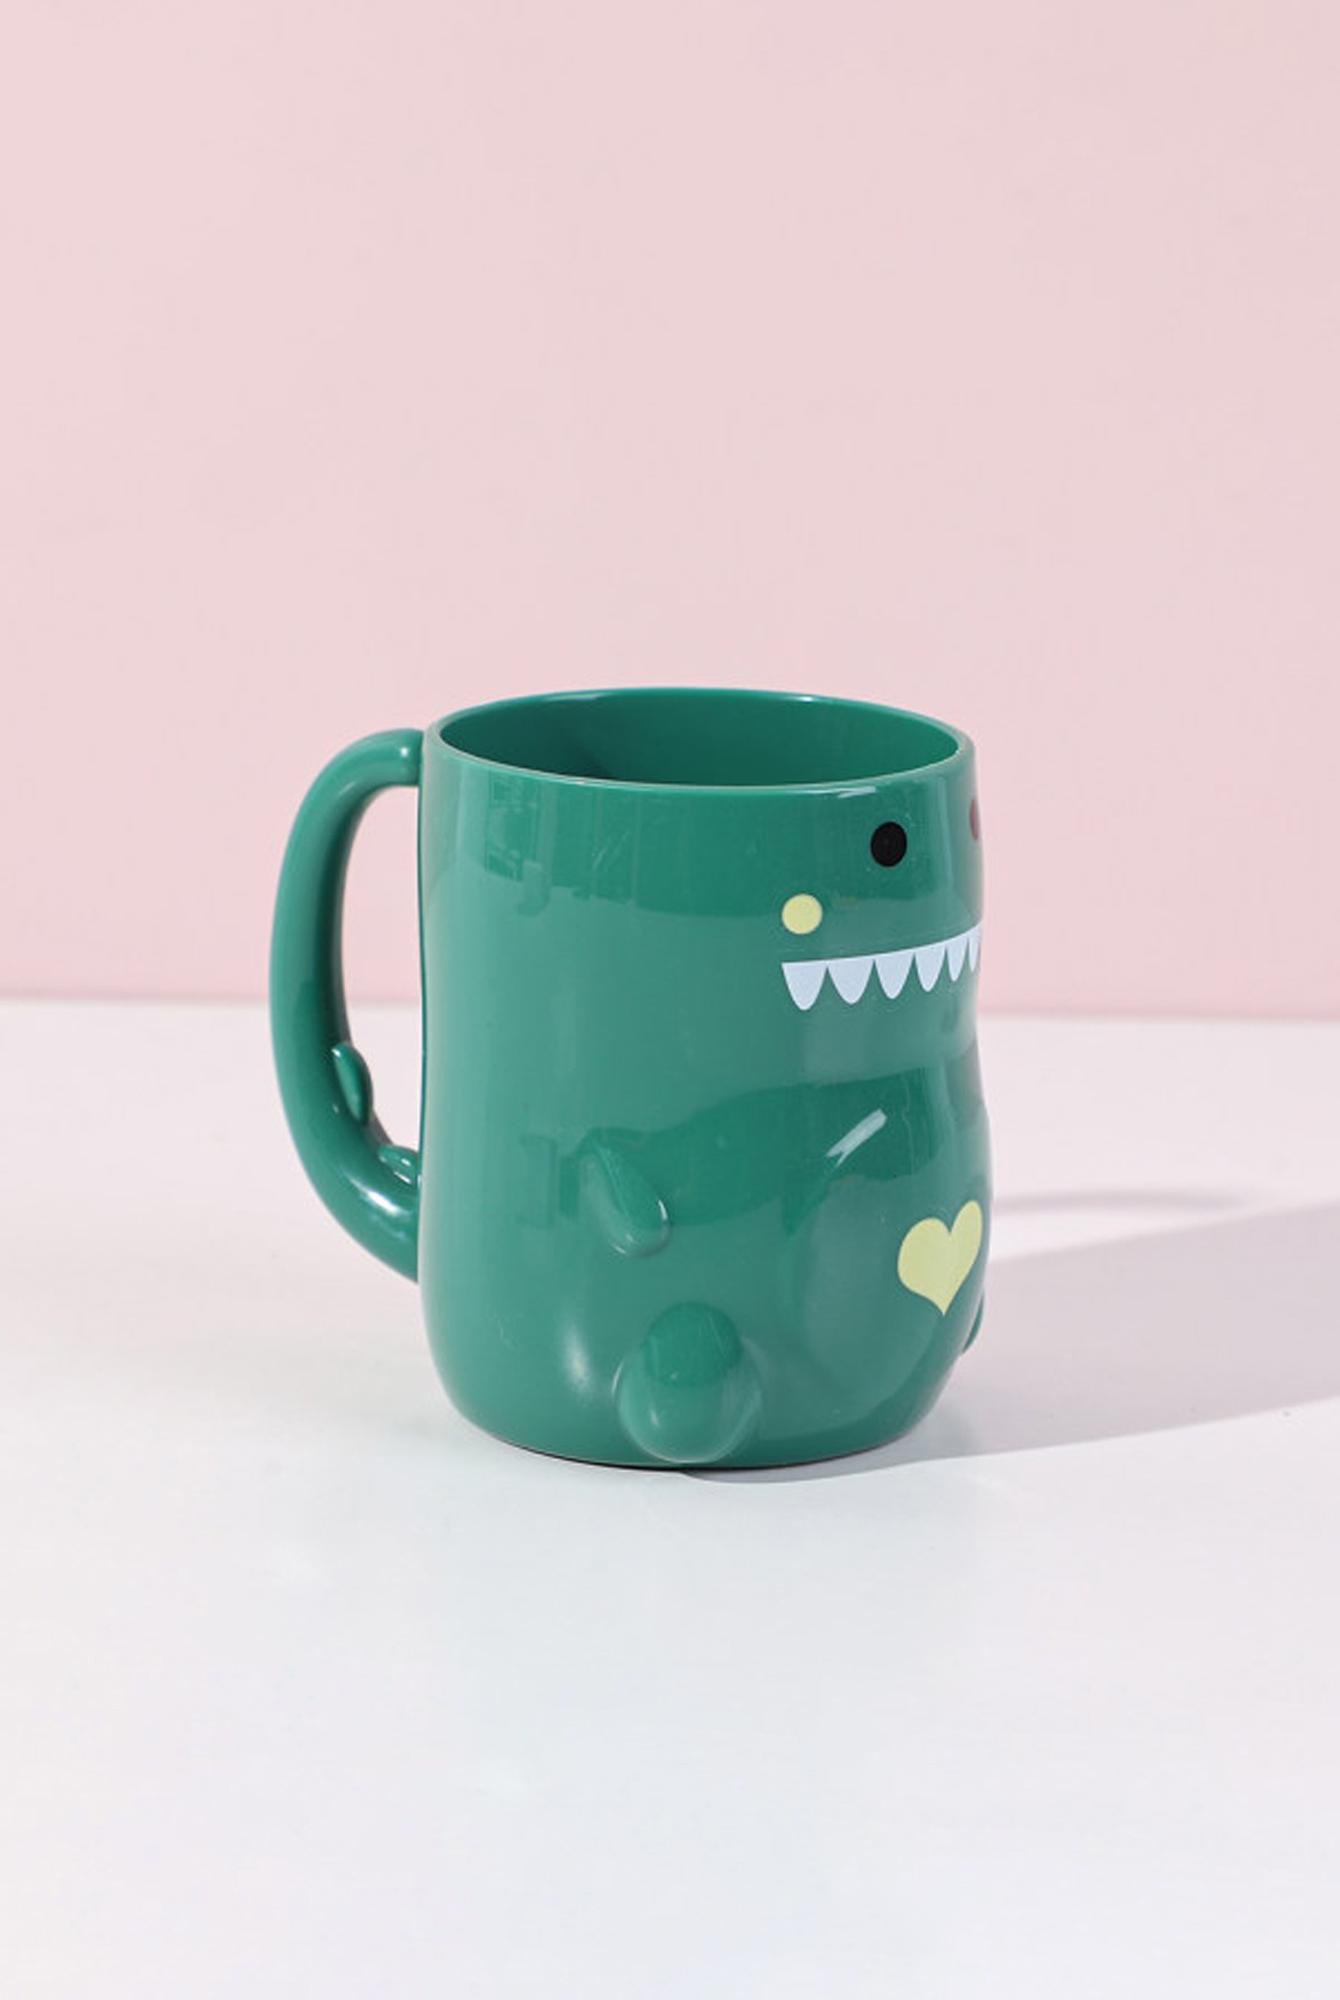  Yoyoso Sevimli Dinozor Diş Fırçalık Yeşil